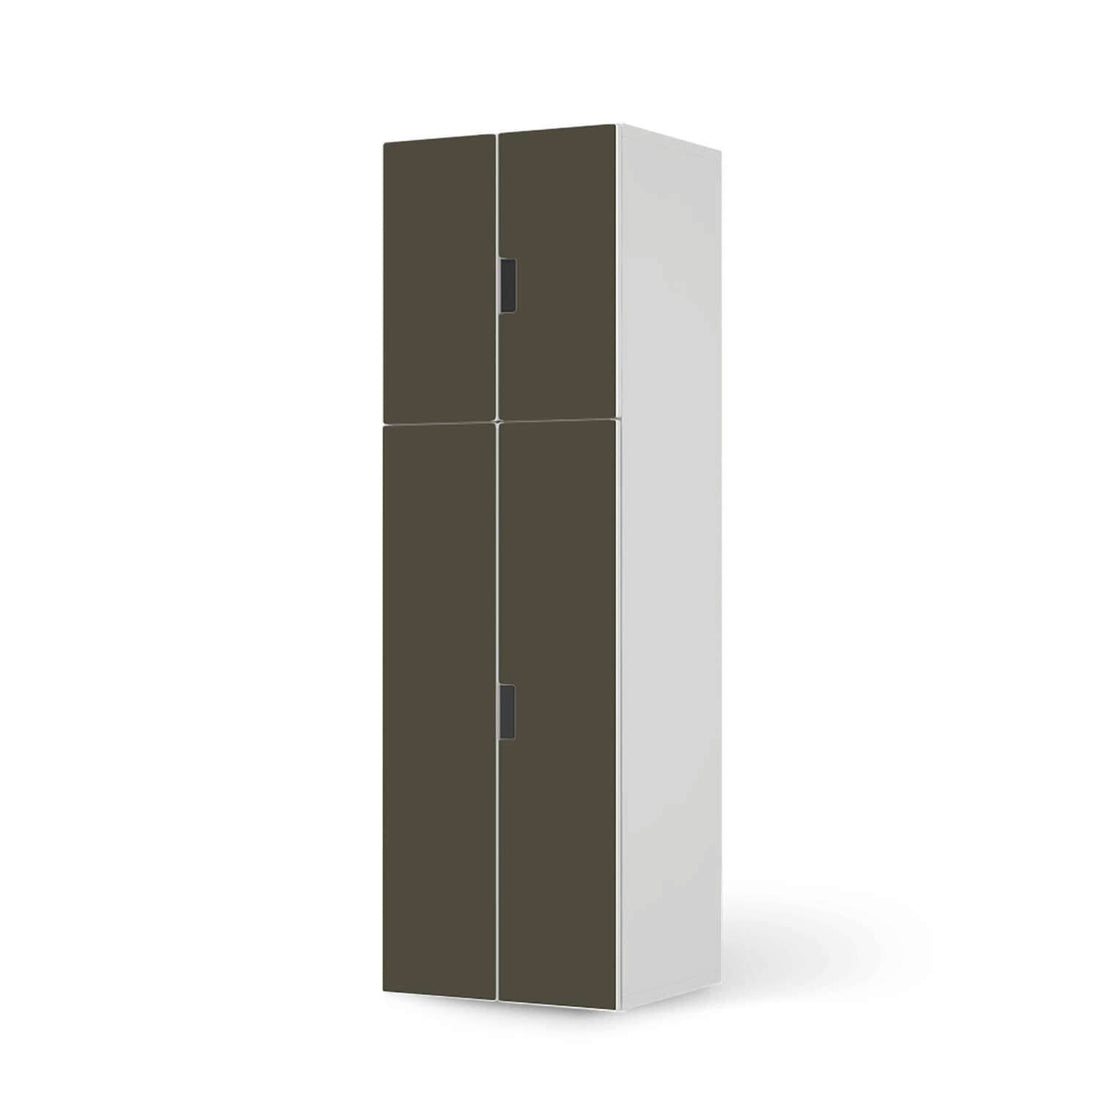 Selbstklebende Folie Braungrau Dark - IKEA Stuva kombiniert - 2 große Türen und 2 kleine Türen (Kombination 2)  - weiss